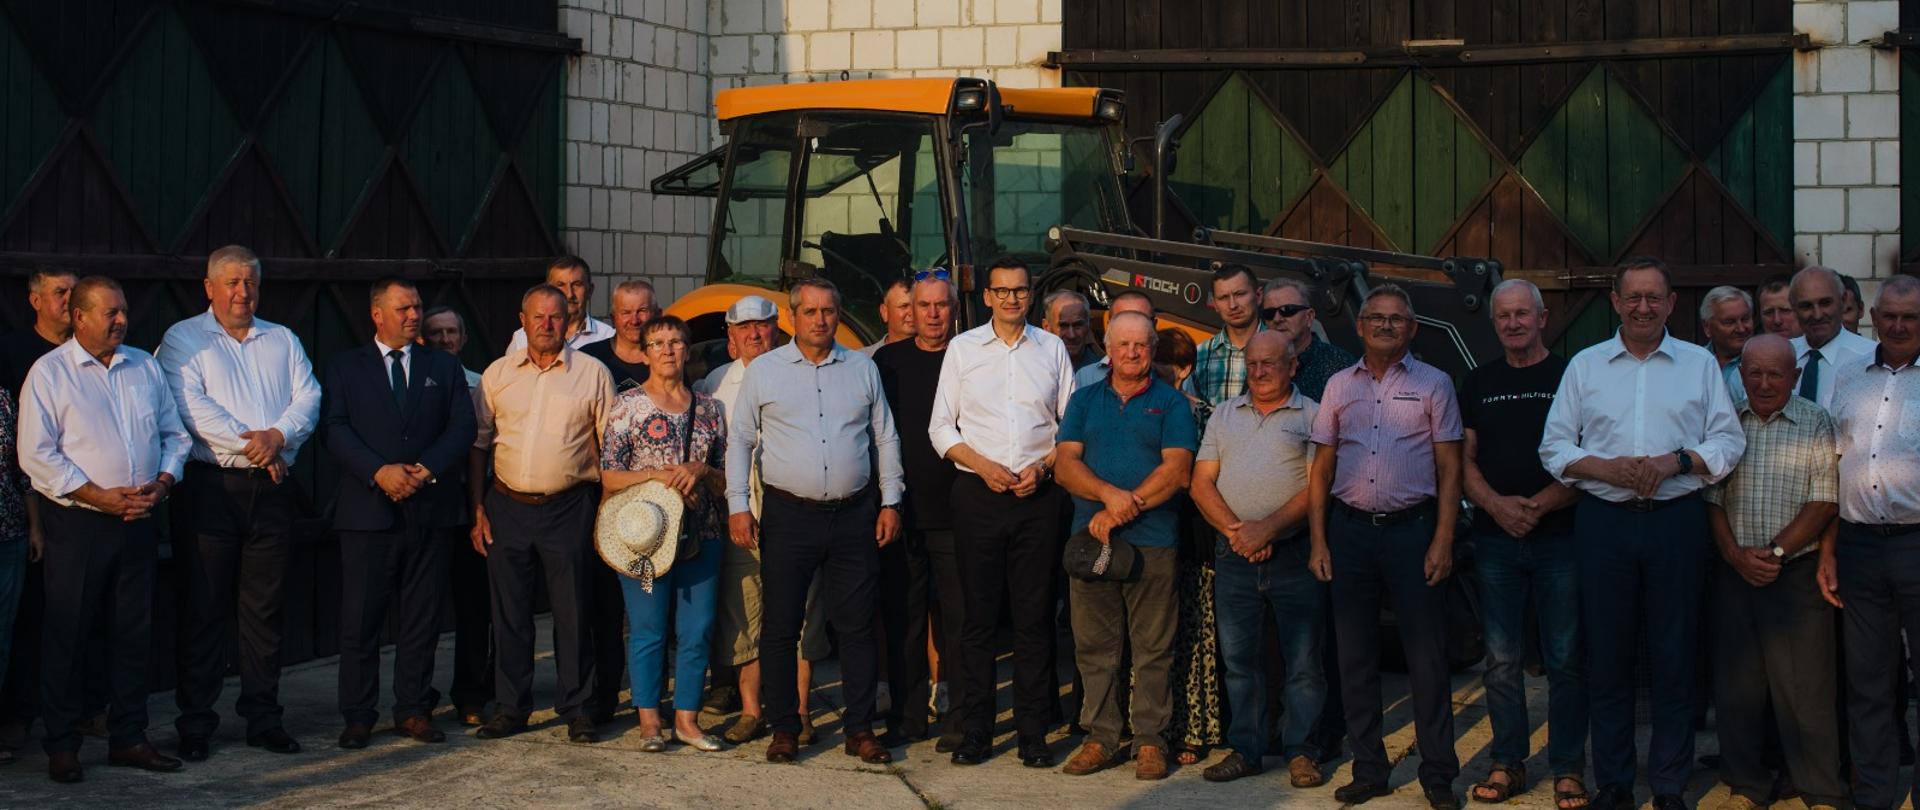 Premier Mateusz Morawiecki i minister rolnictwa i rozwoju wsi Robert Telus podczas spotkania z rolnikami.